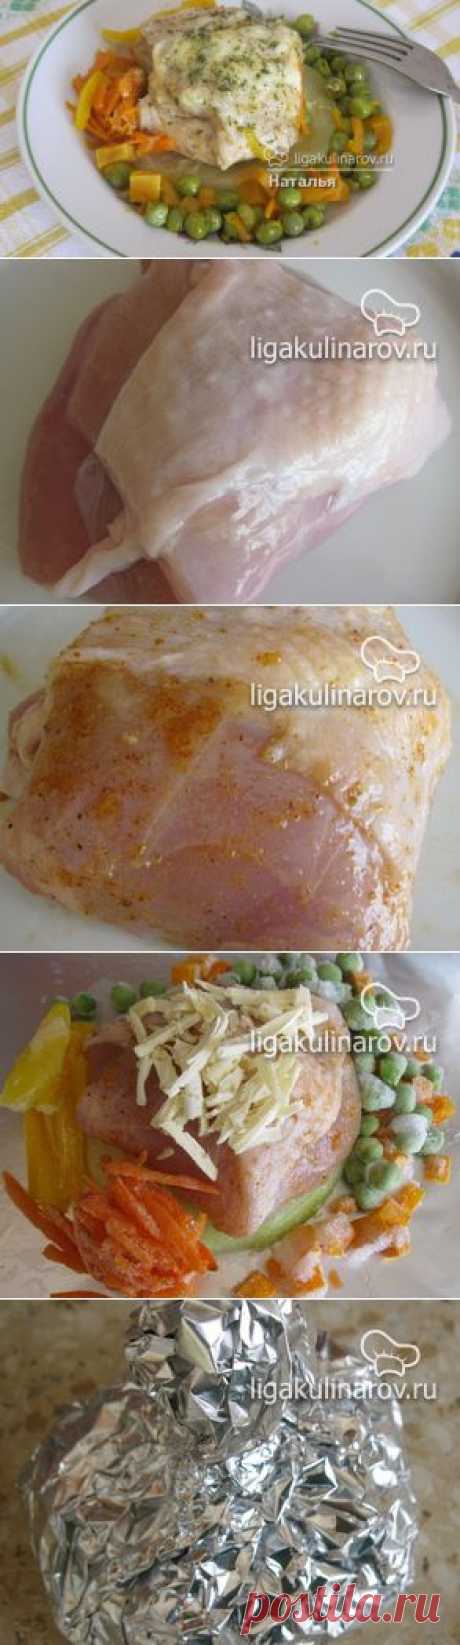 Куриная грудка, запеченная с овощами и сыром, рецепт пошаговый от Лиги Кулинаров.